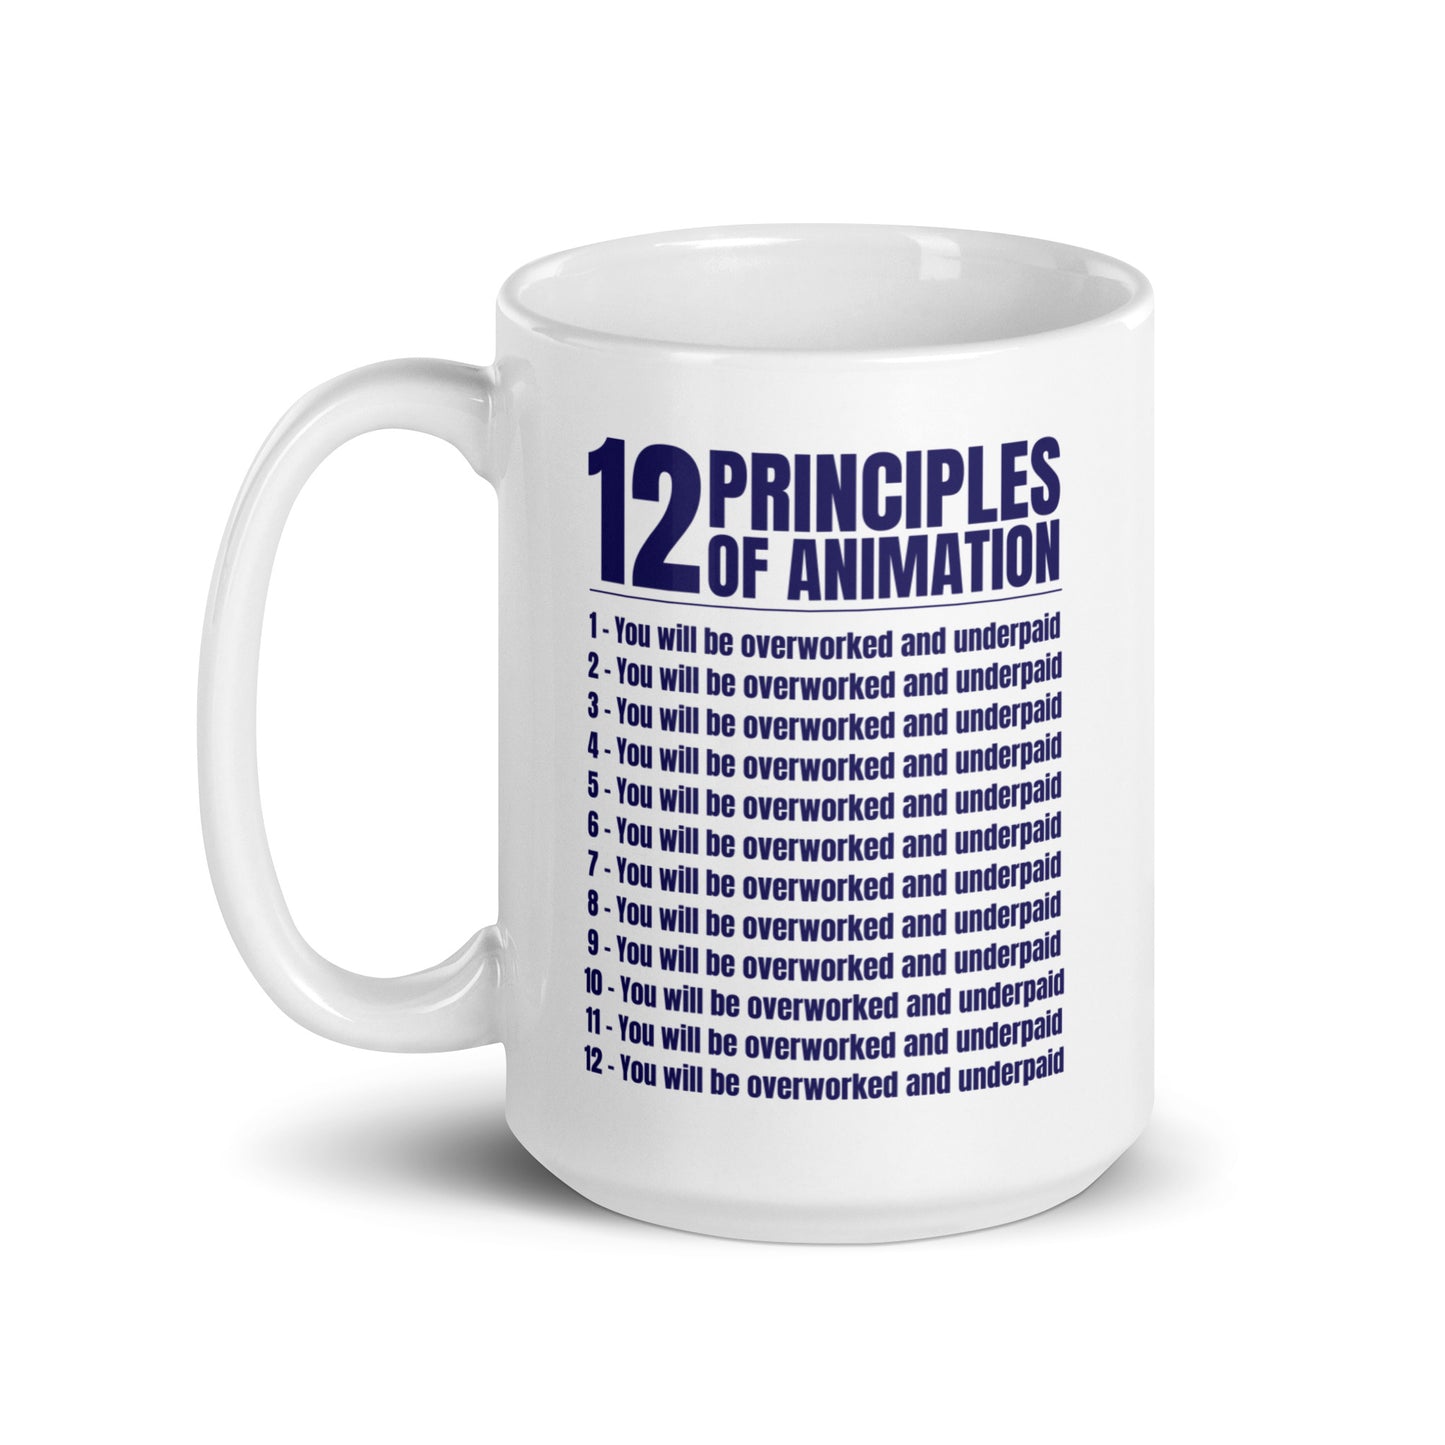 12 Principles of Animation mug